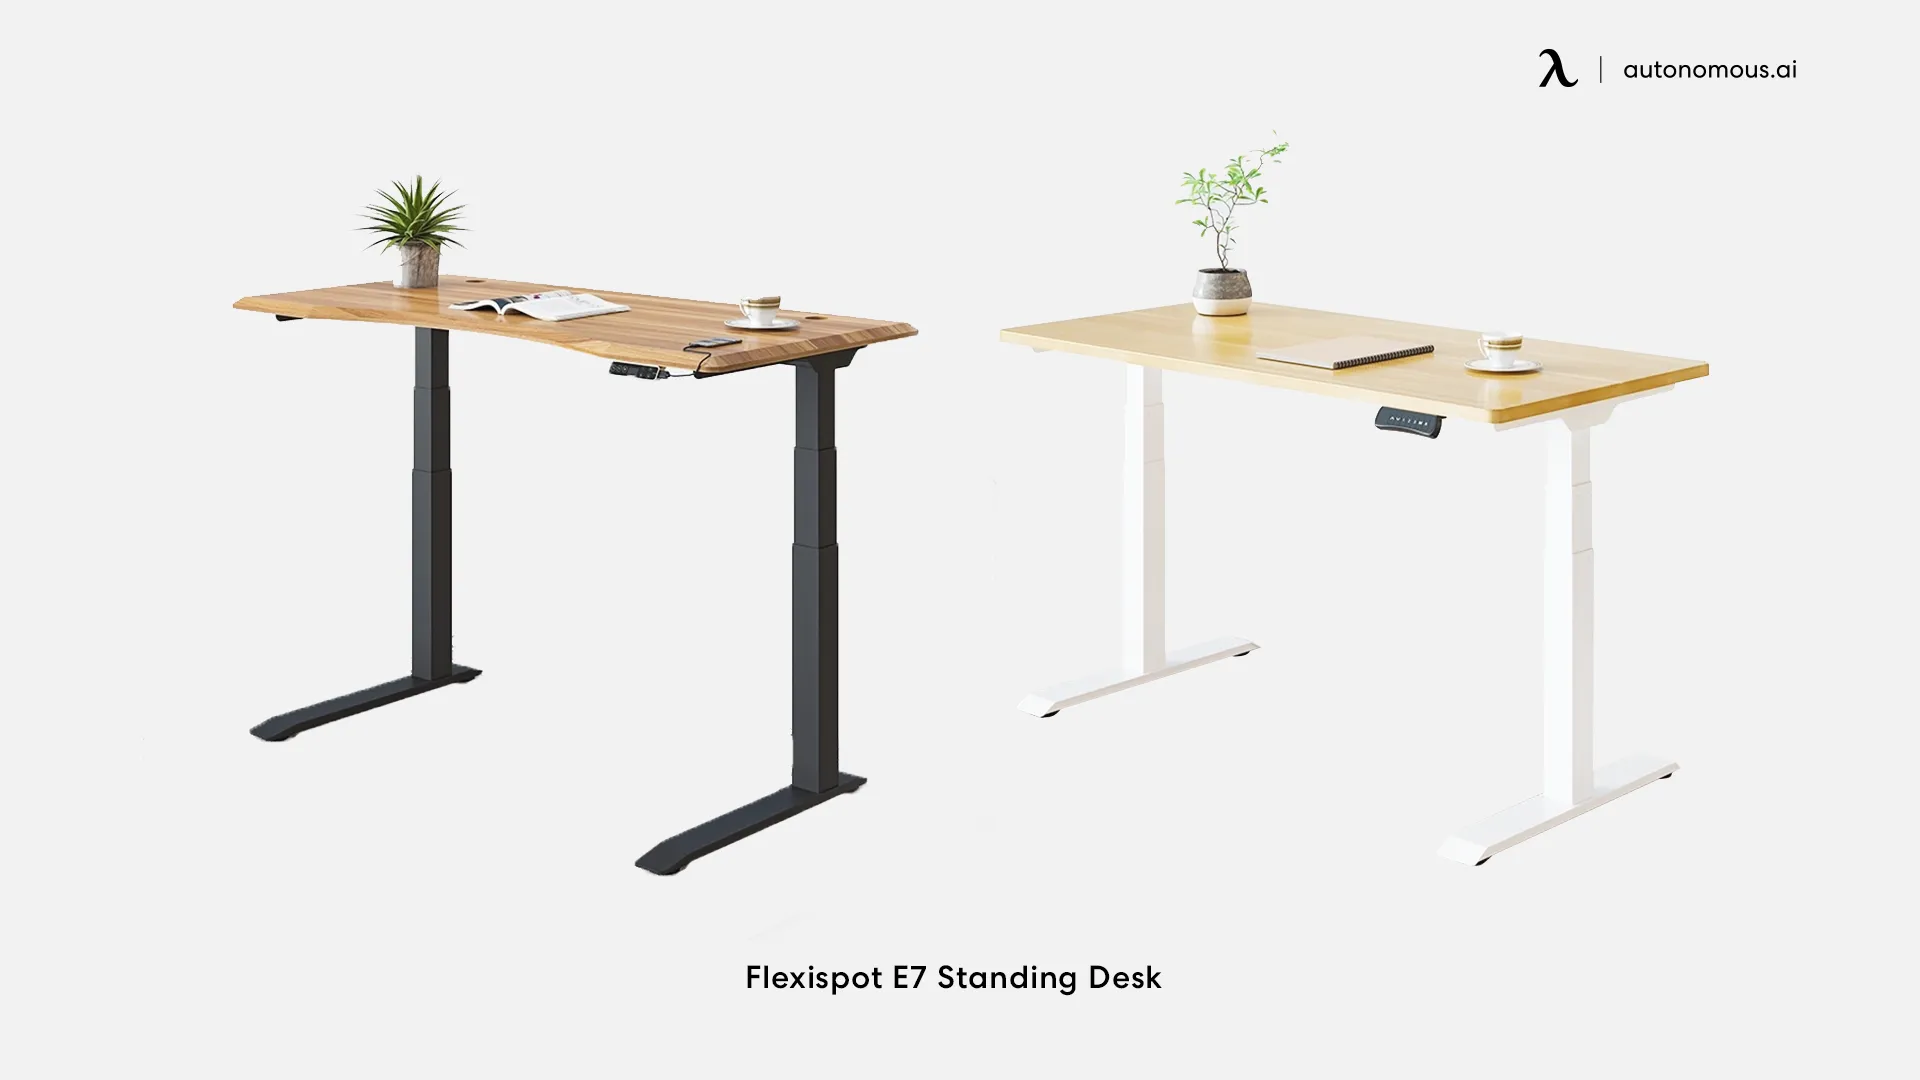 Flexispot E7 standing desk for home office